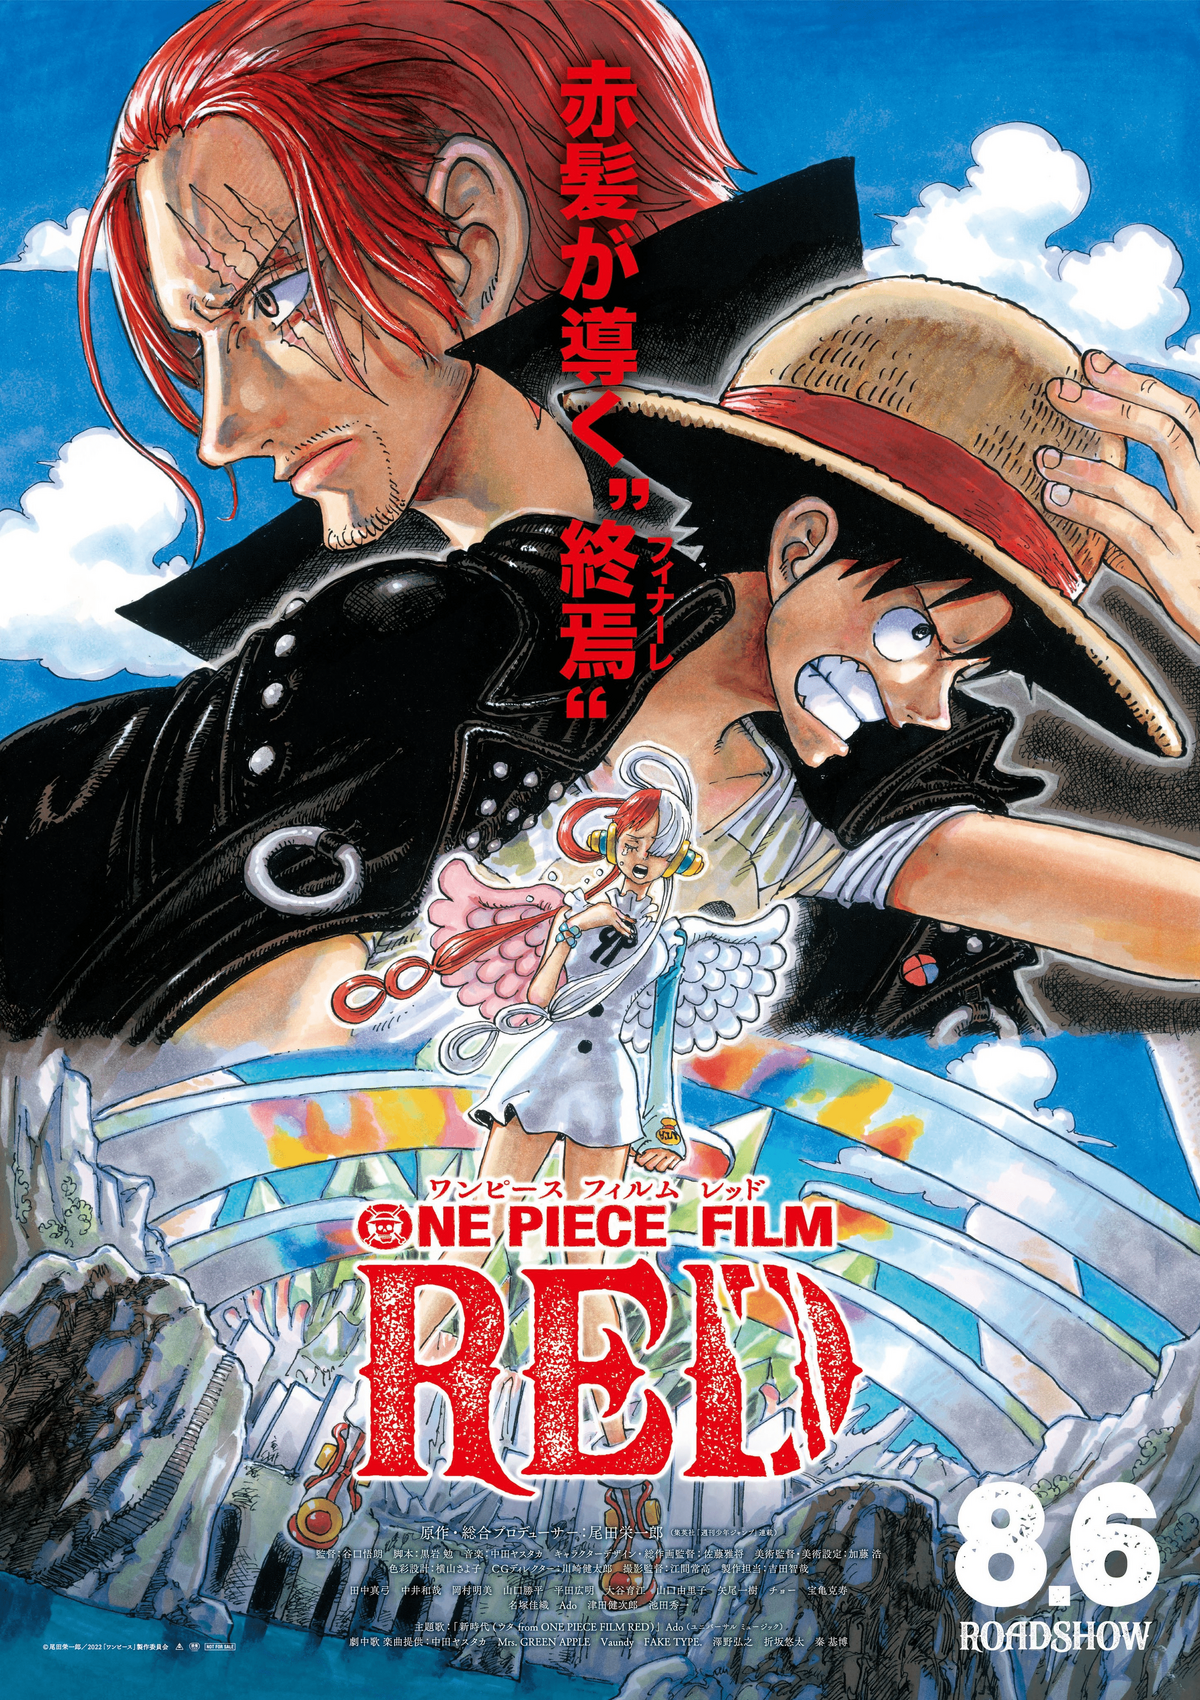 One Piece Film: Red | One Piece Wiki | Fandom